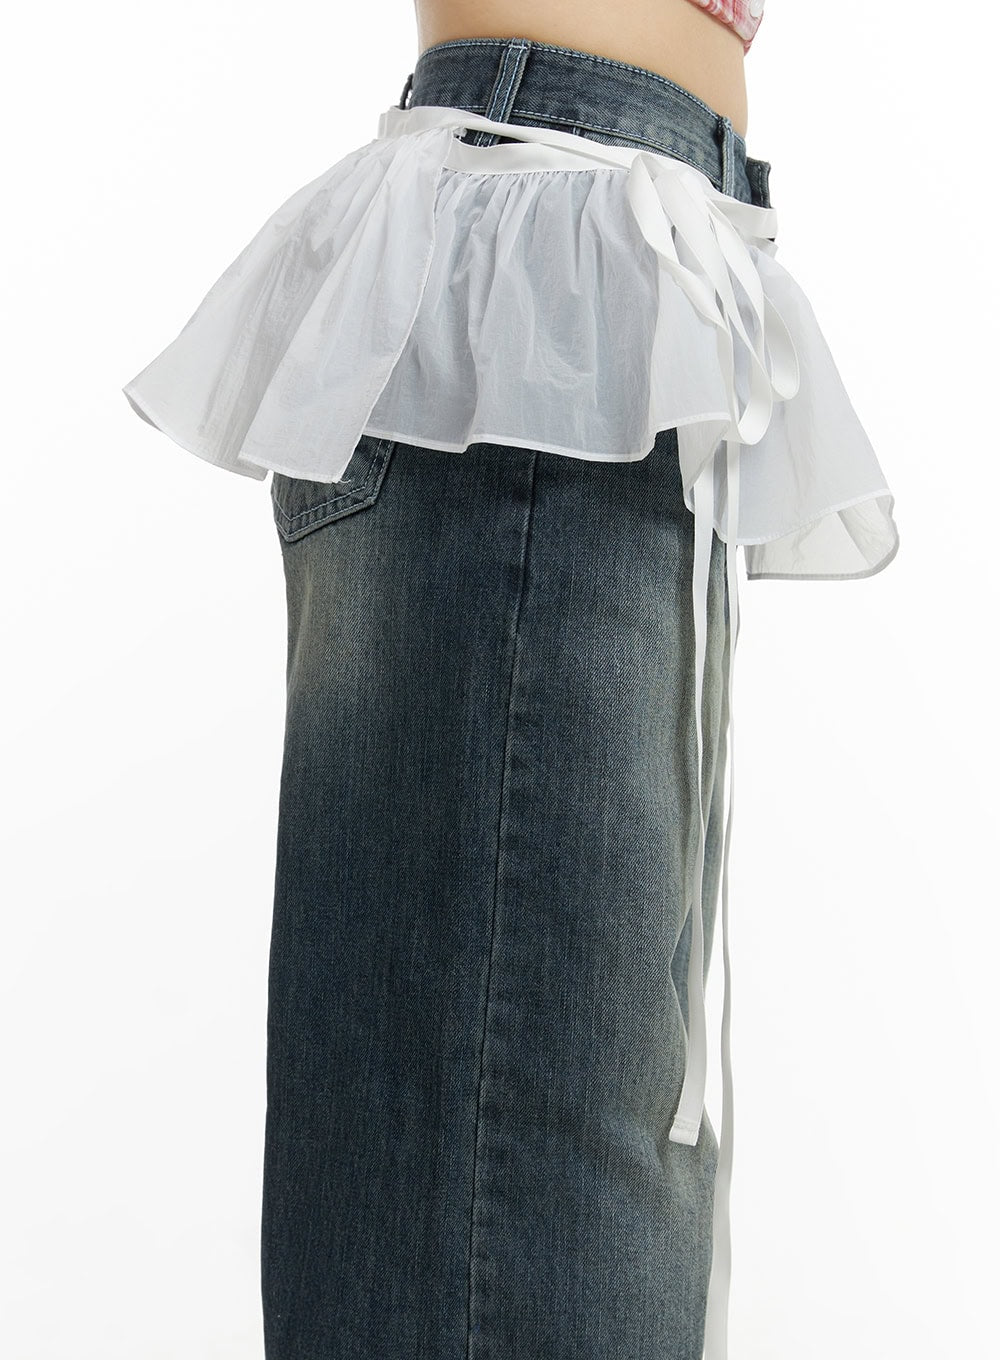 sheer-frill-mini-skirt-wrap-cu425